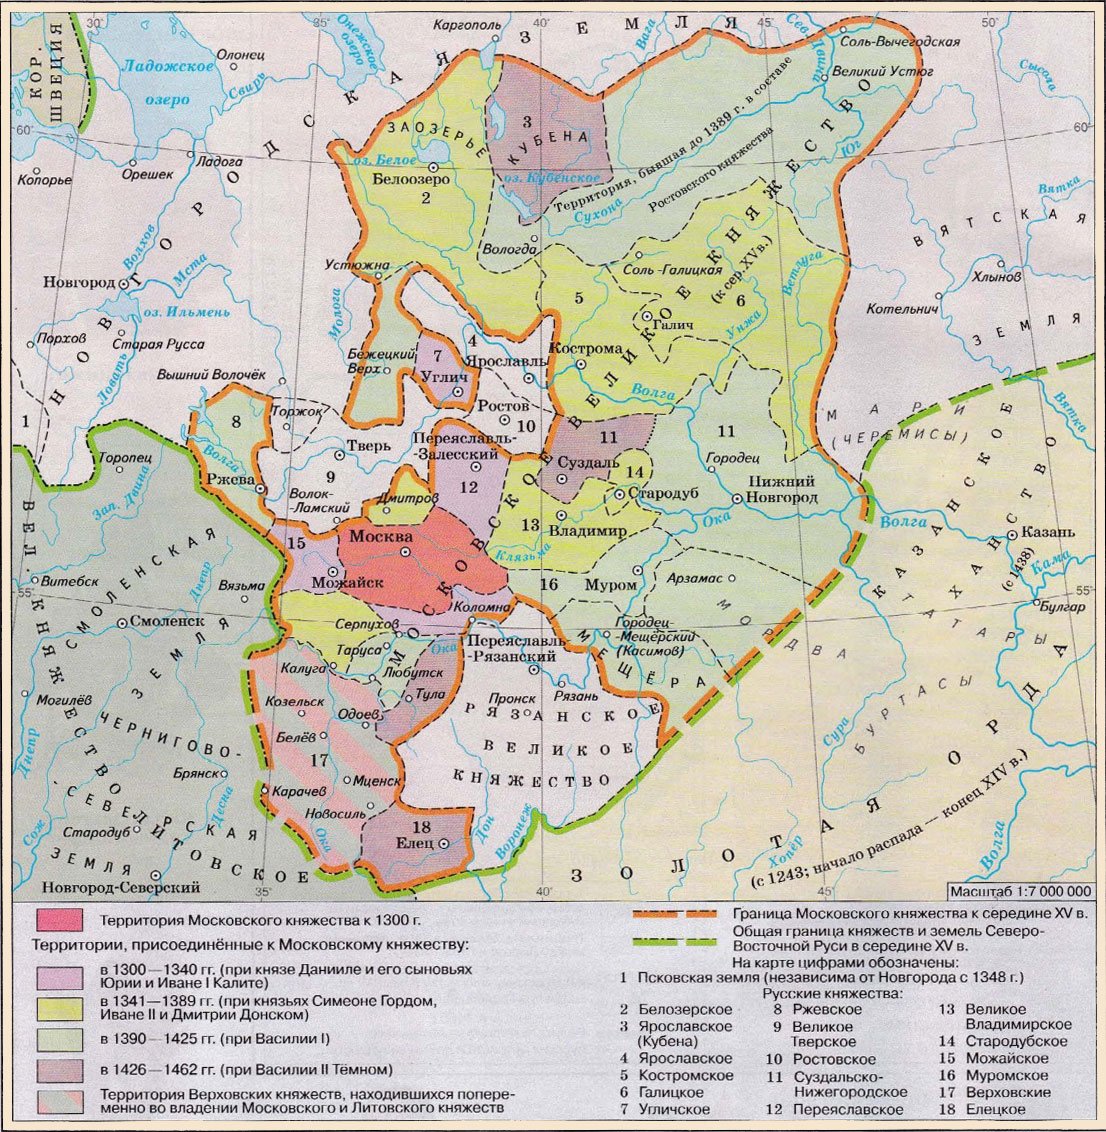 Рост территории Московского княжества в 14-15 веке